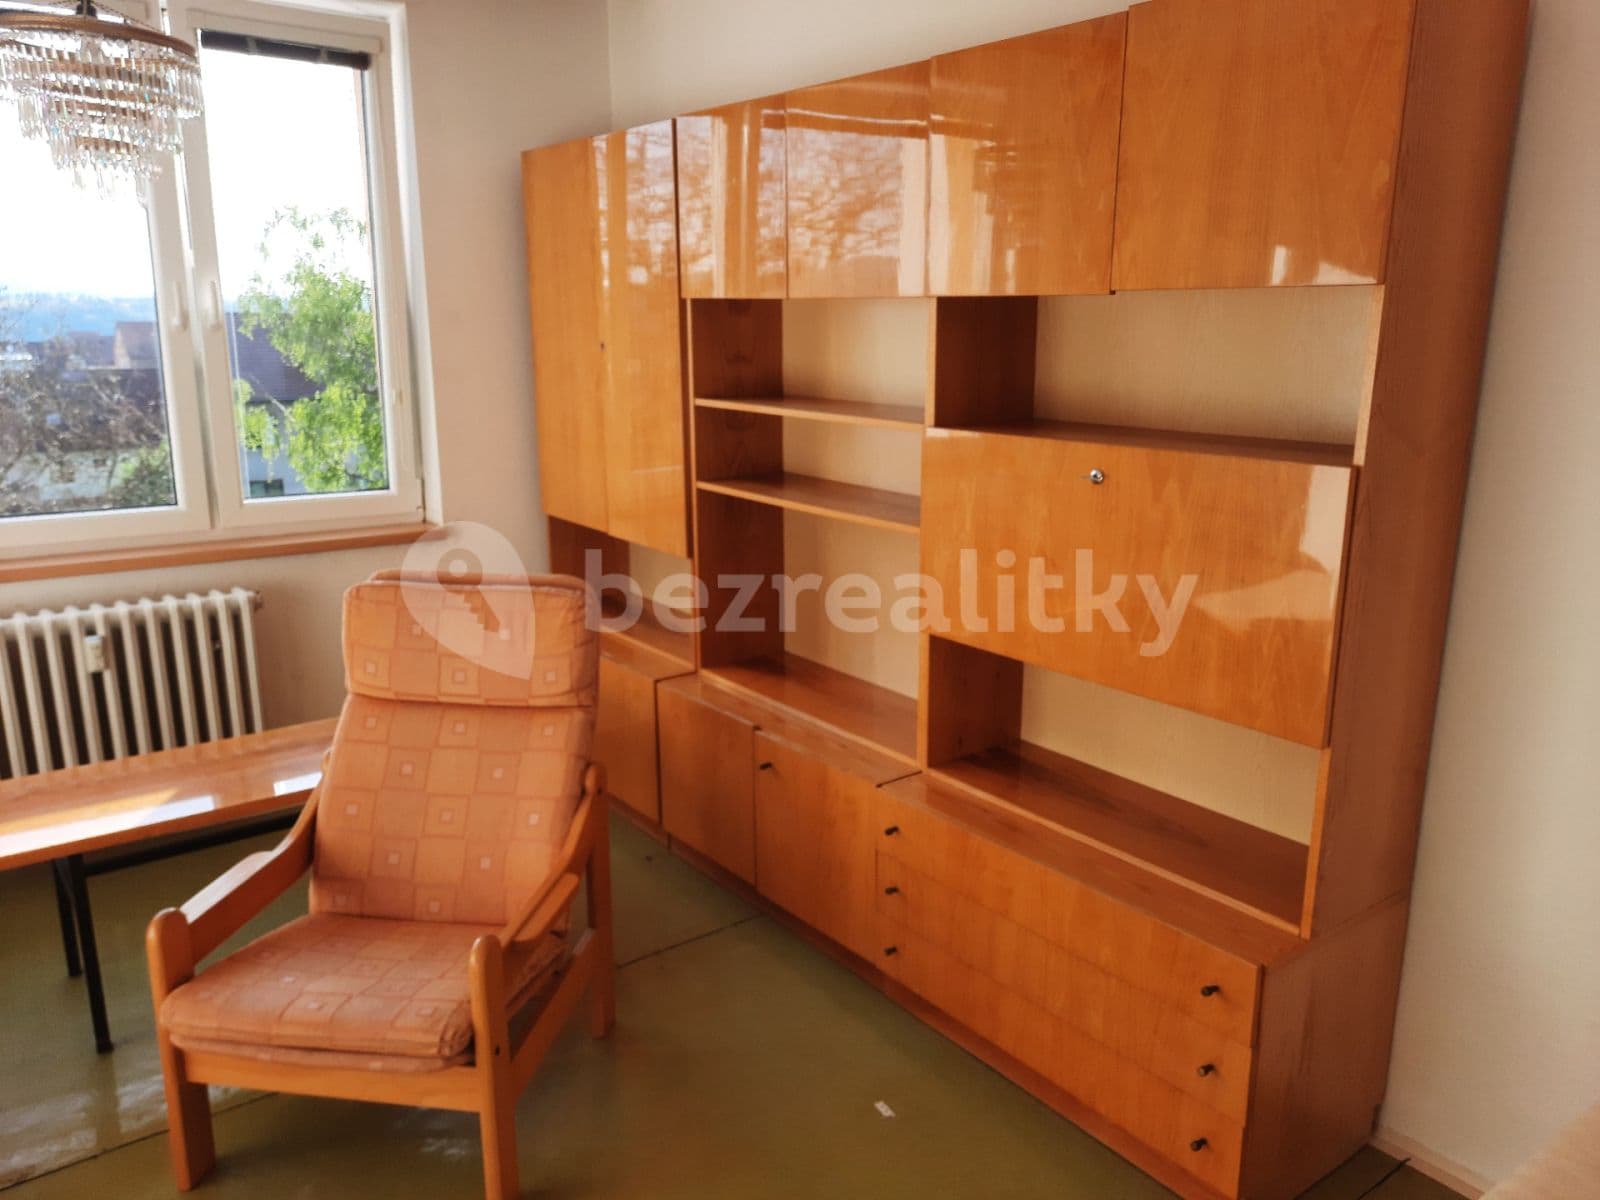 2 bedroom flat to rent, 58 m², Račerovická, Třebíč, Vysočina Region